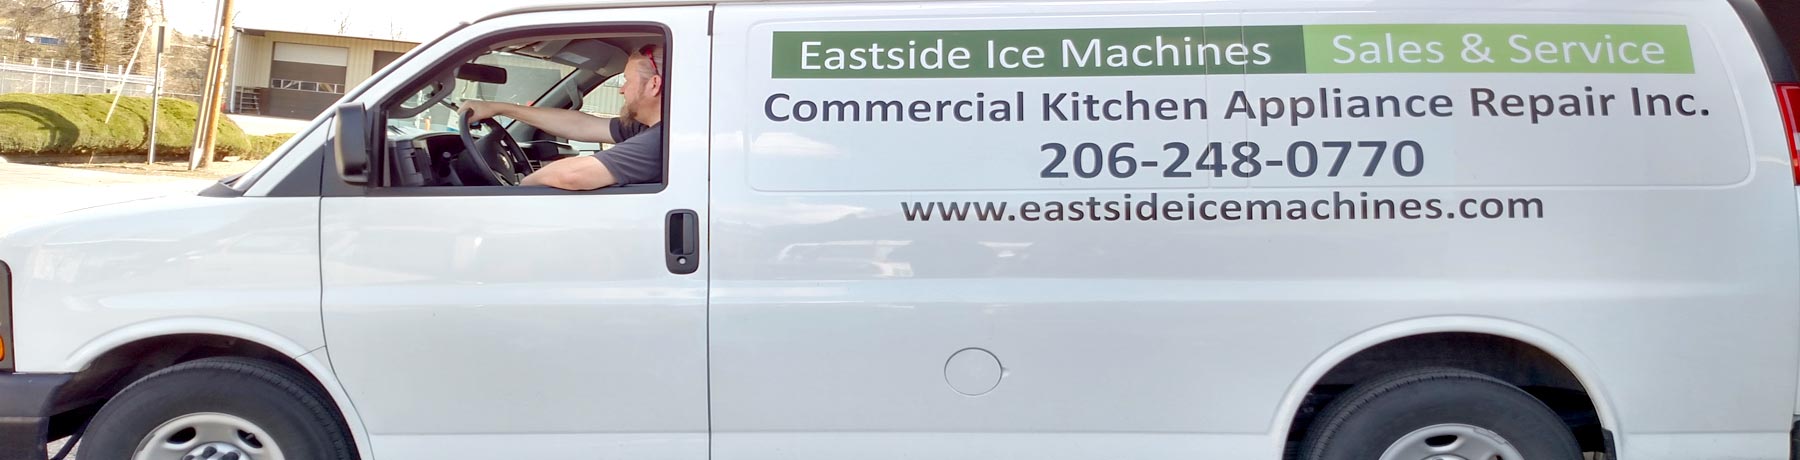 Eastside Ice Machines Careers